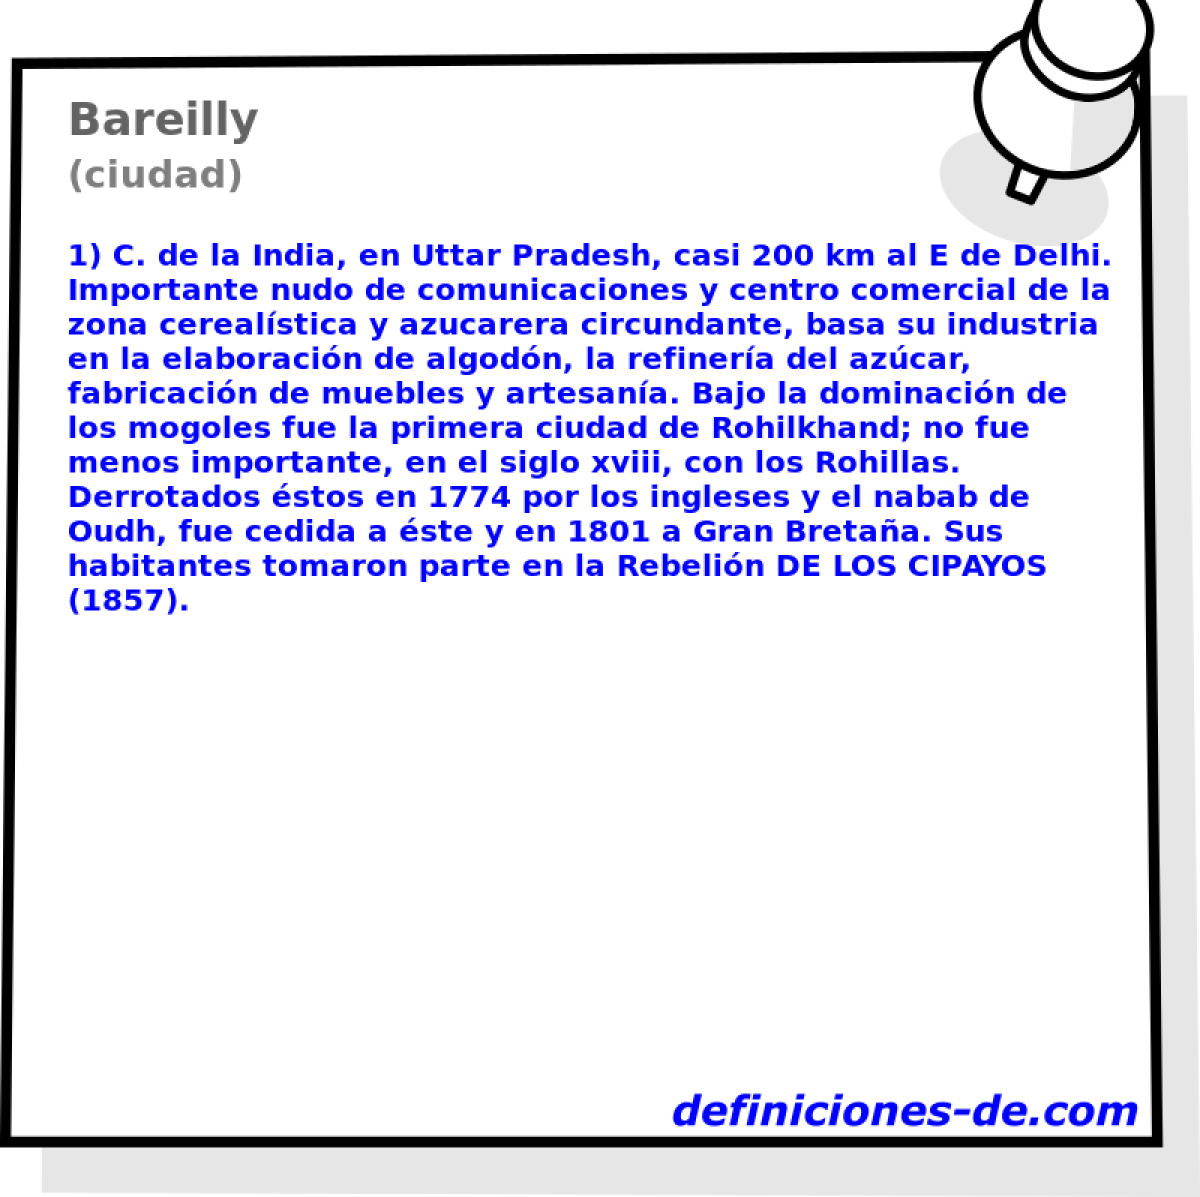 Bareilly (ciudad)